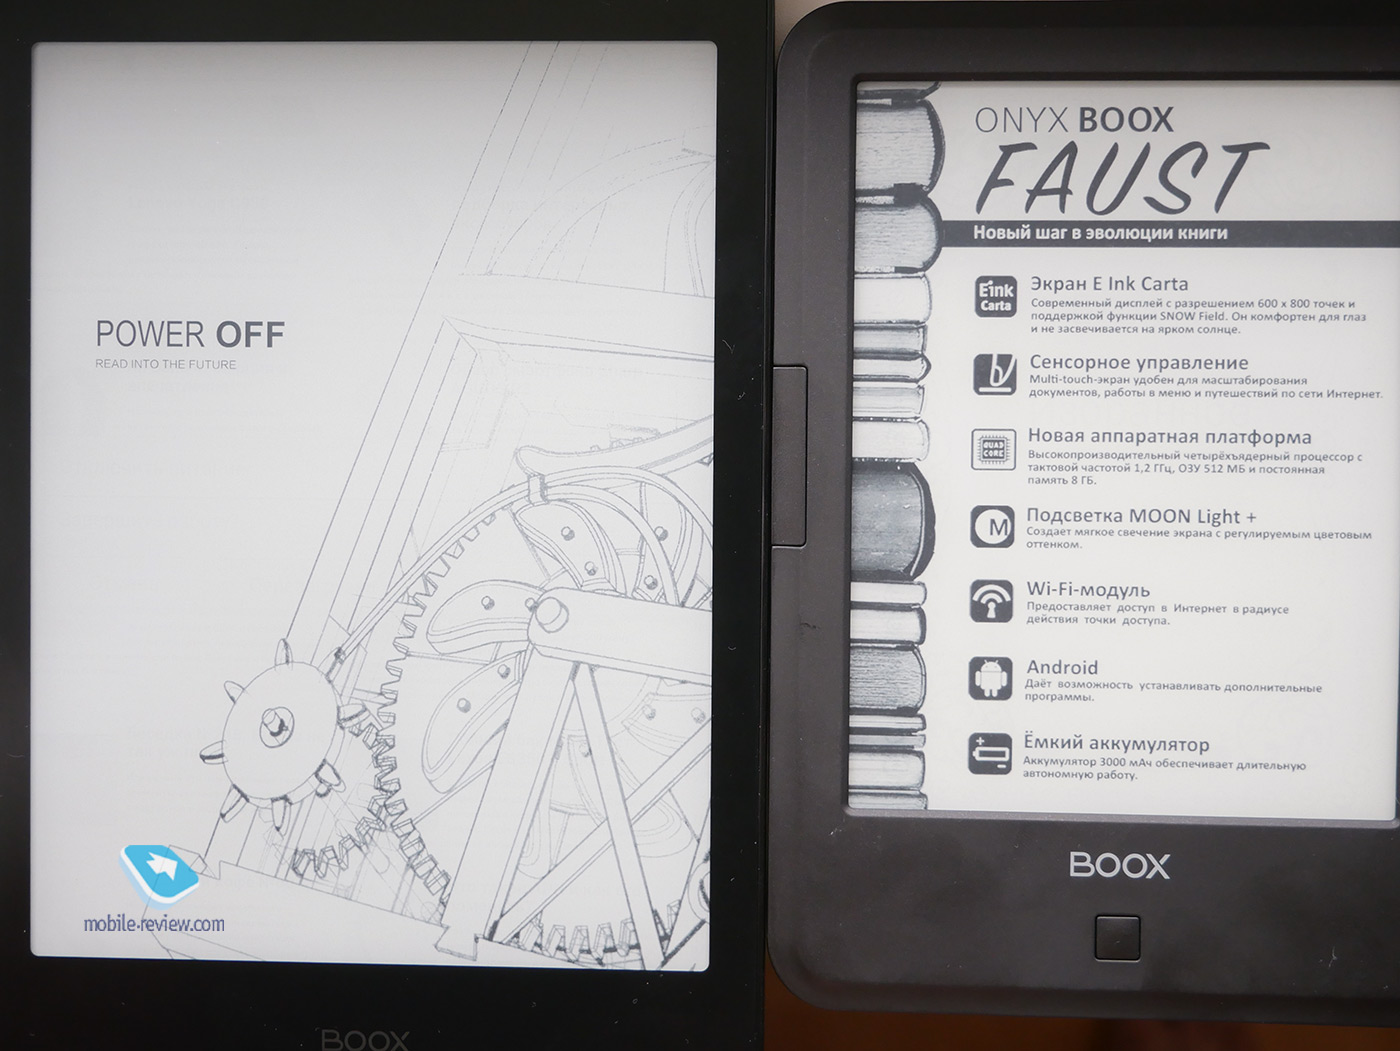 Обзор электронной книги ONYX BOOX Faust